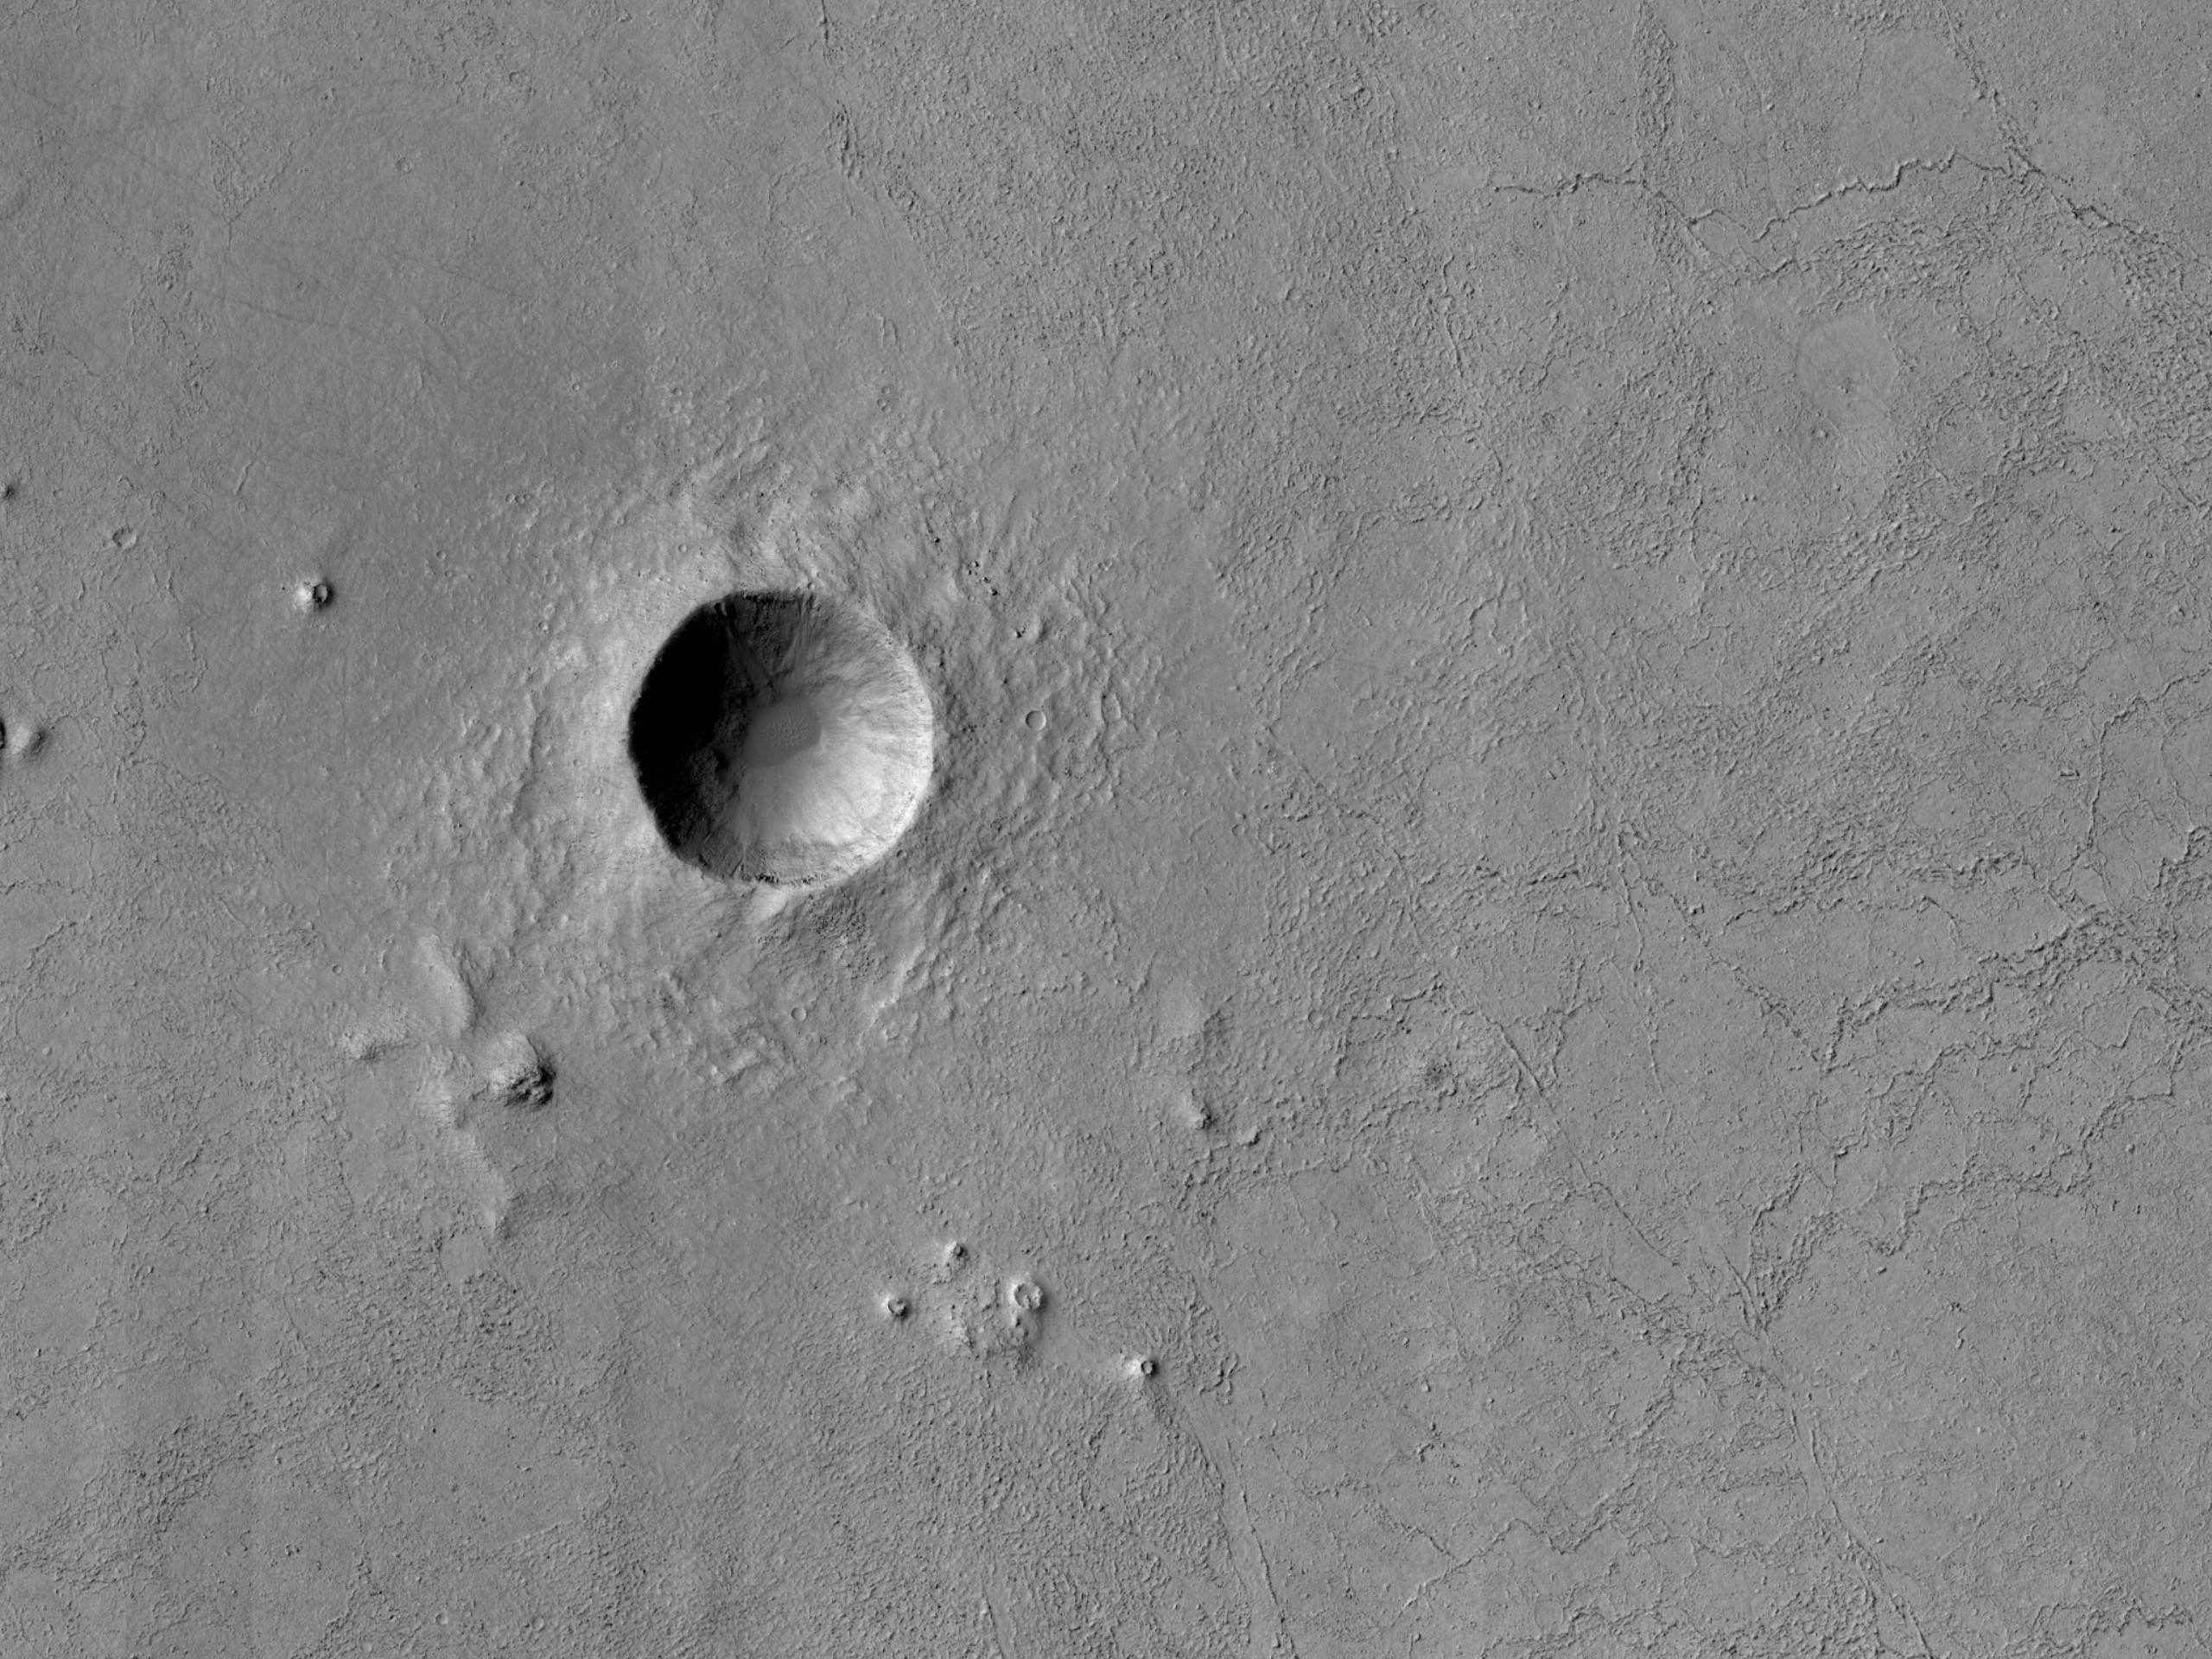 Craters and Lava in Elysium Planitia